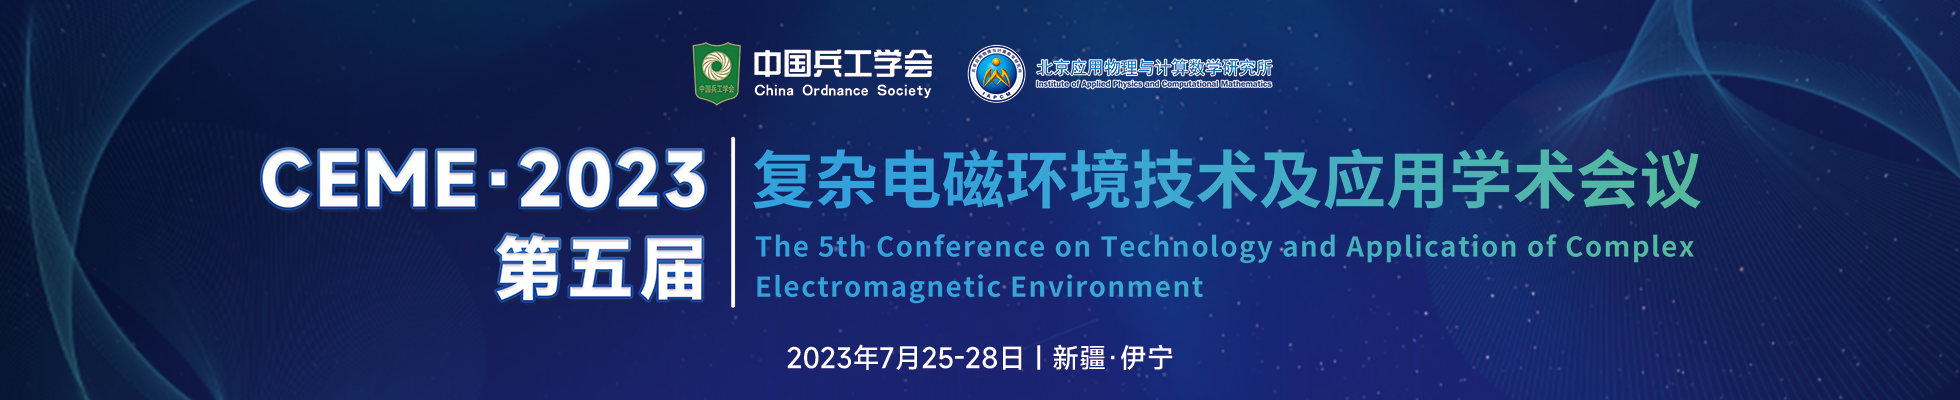 第五届复杂电磁环境技术及应用学术会议-酒店预订